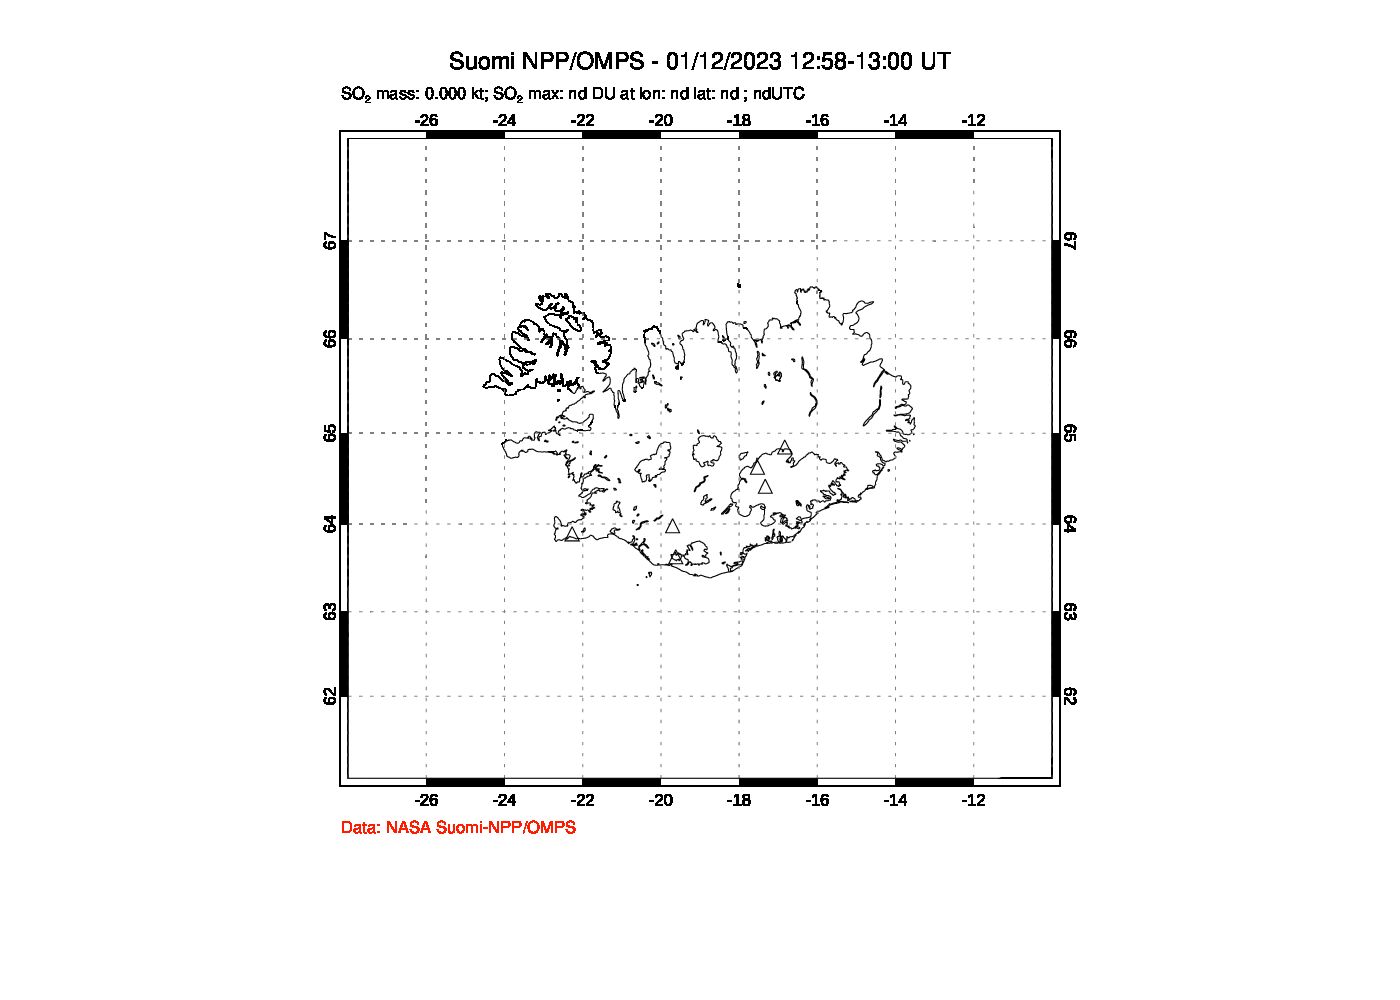 A sulfur dioxide image over Iceland on Jan 12, 2023.